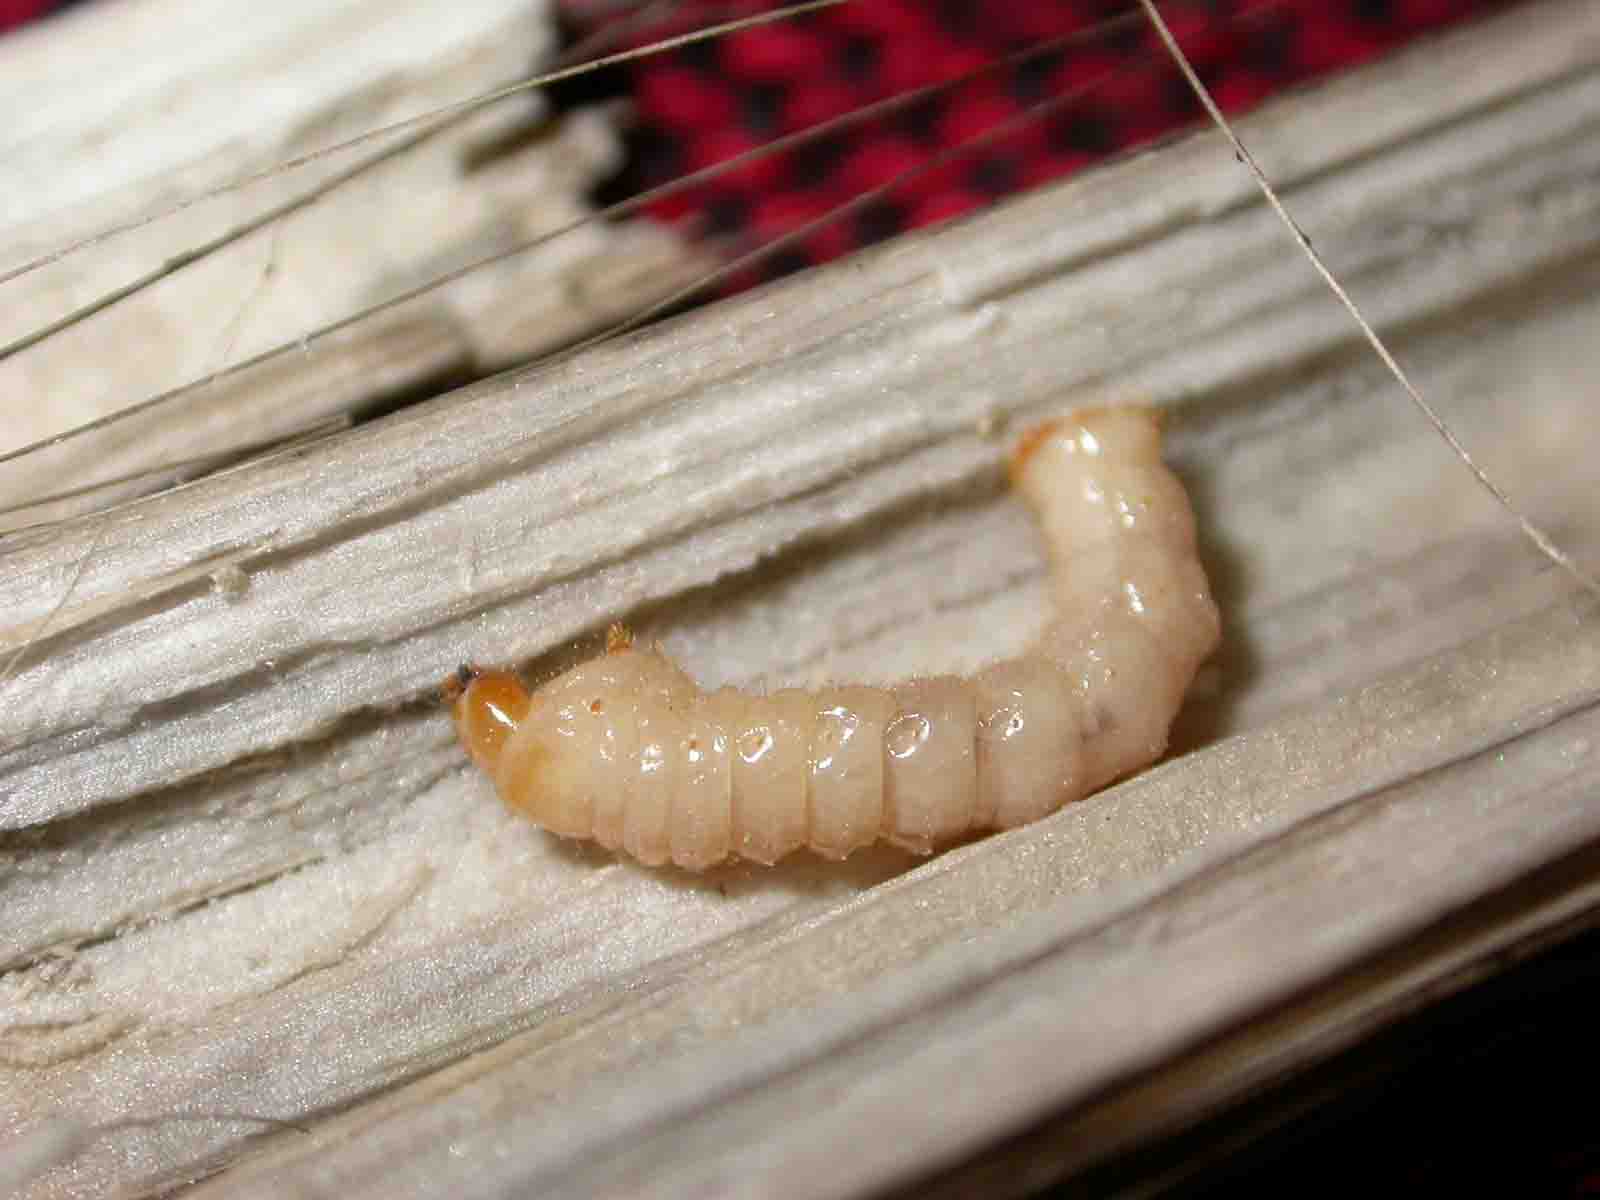 Che larva ?